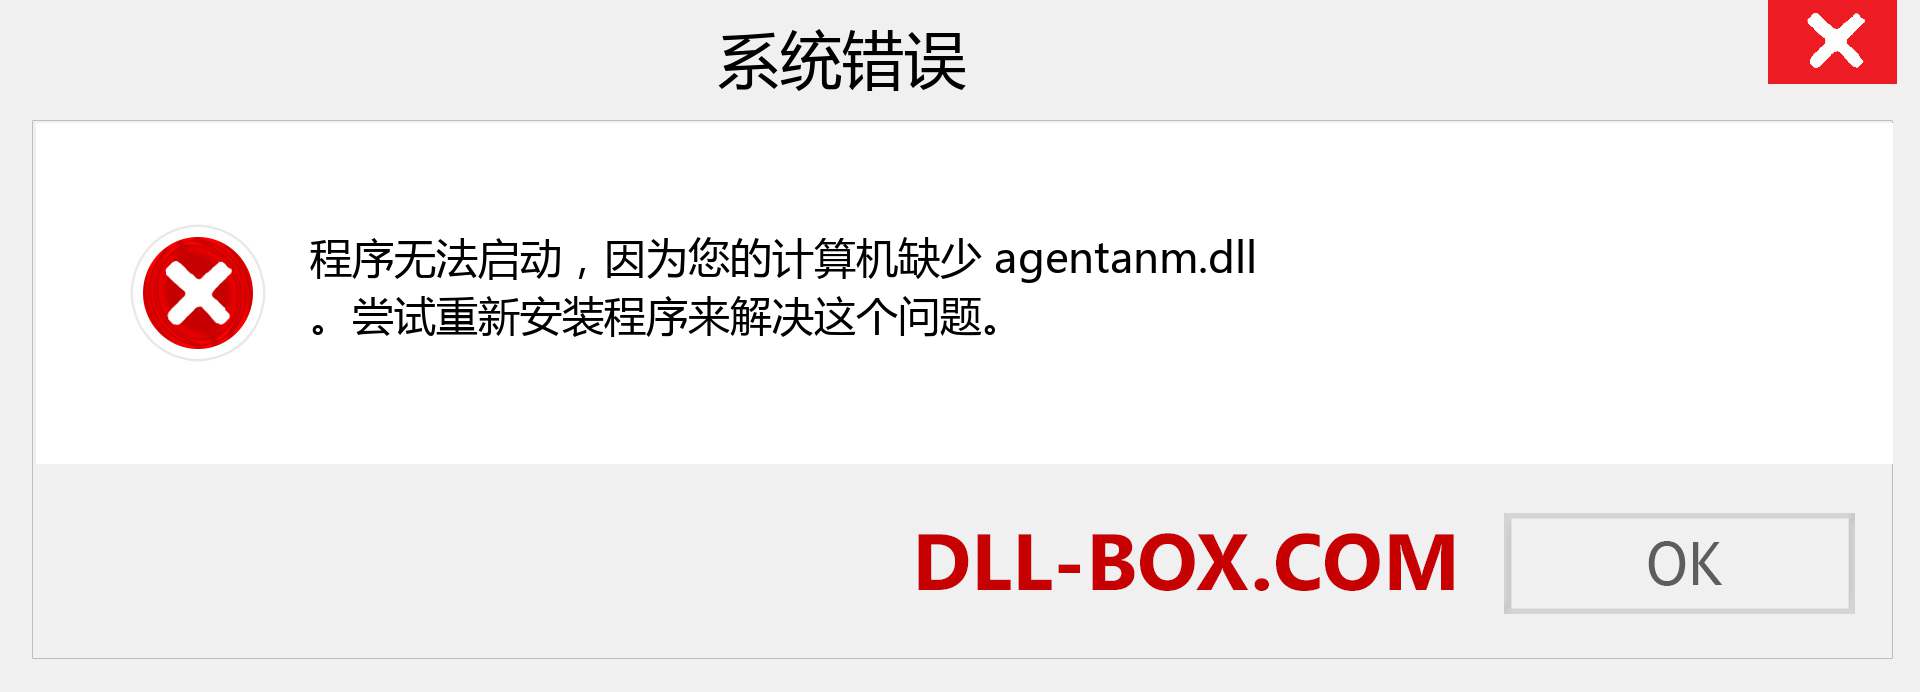 agentanm.dll 文件丢失？。 适用于 Windows 7、8、10 的下载 - 修复 Windows、照片、图像上的 agentanm dll 丢失错误